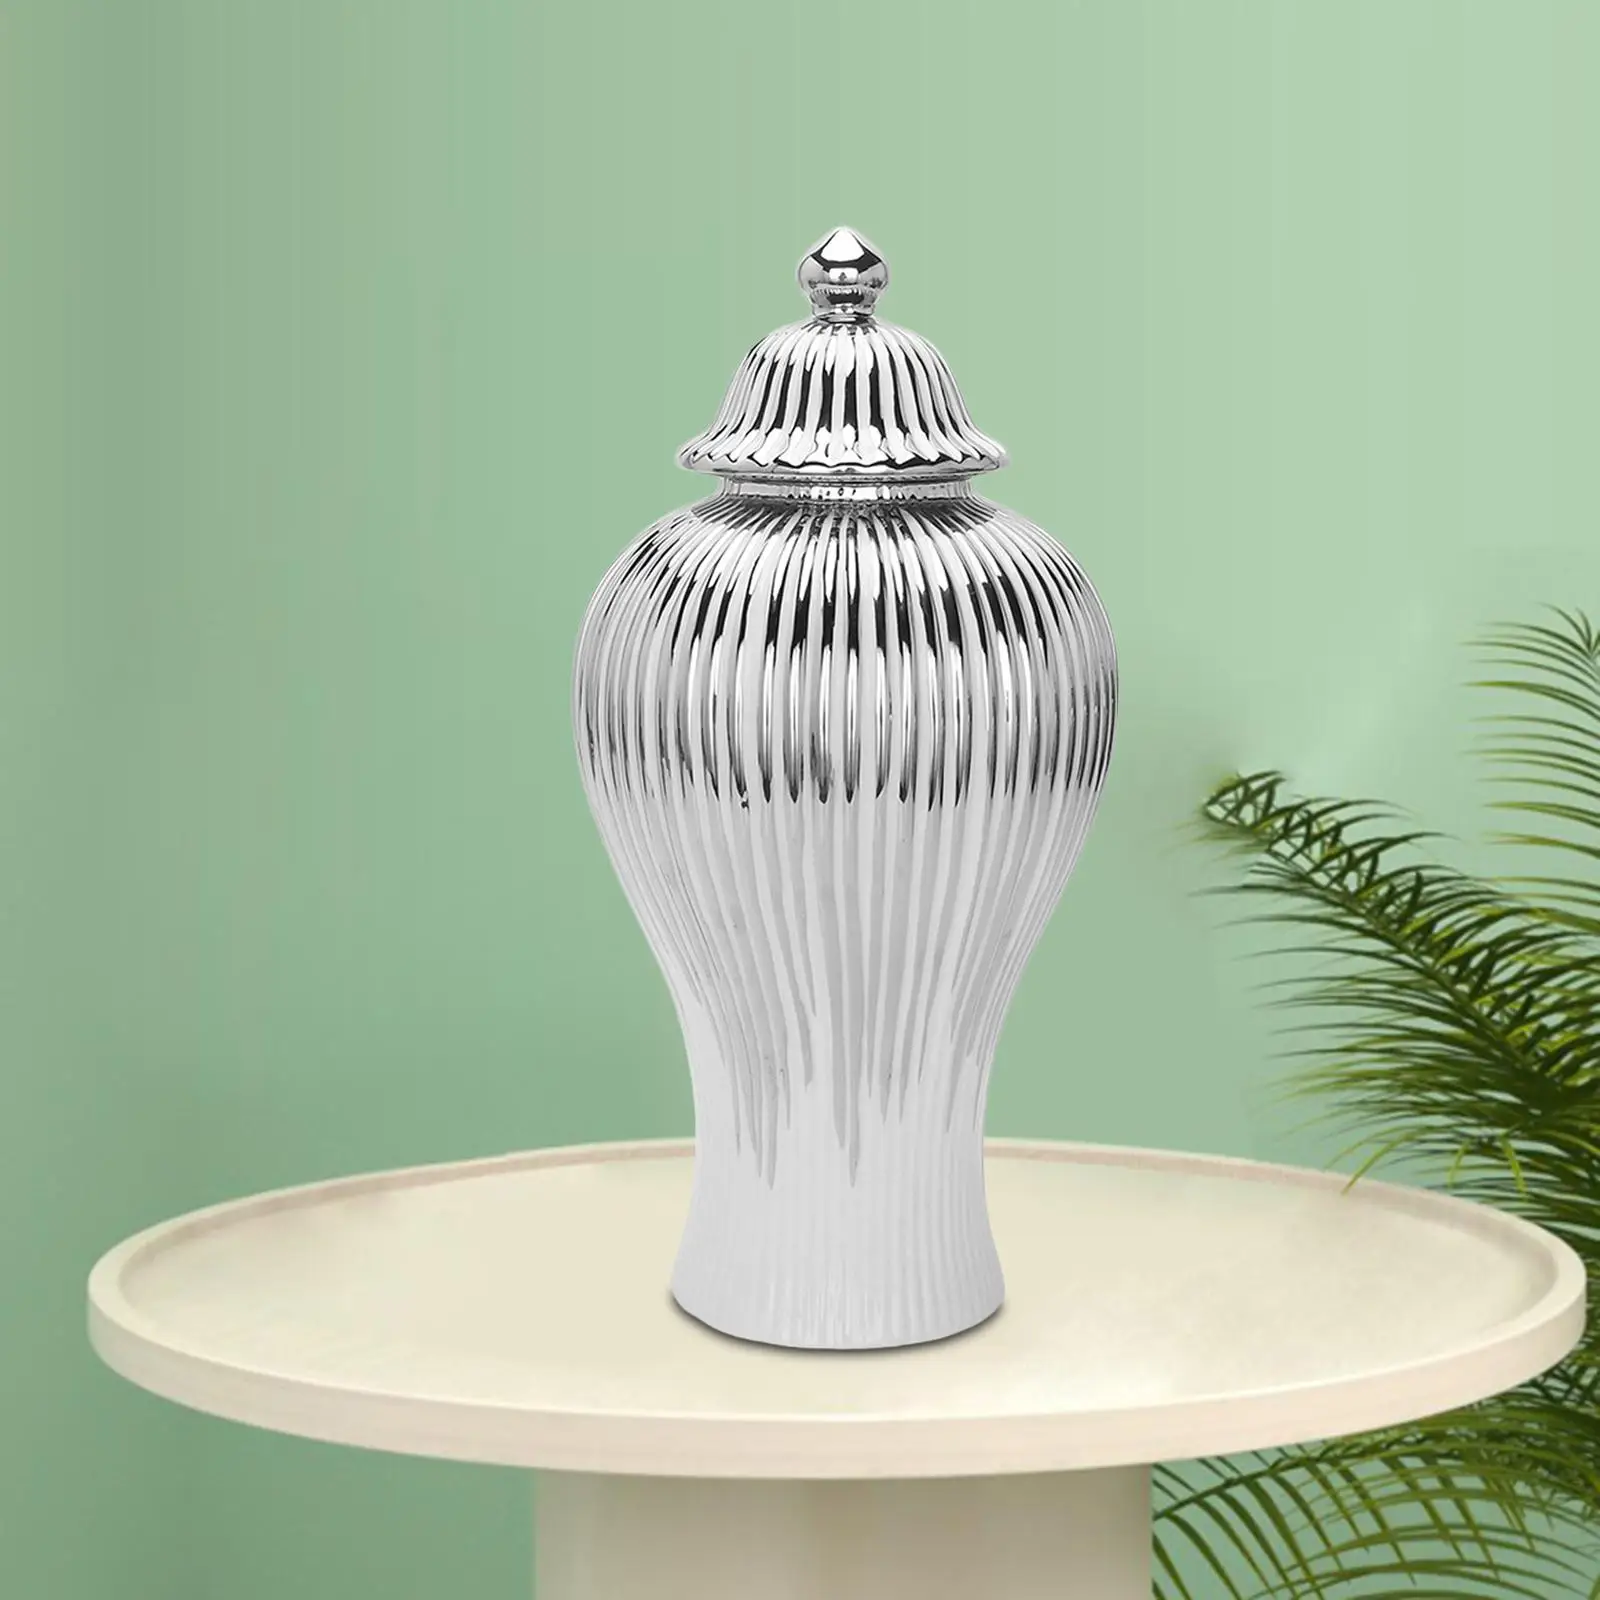 Ginger Jar Storage Vase Floral Arrangement Home Decor Decoration Bottle for Living Room